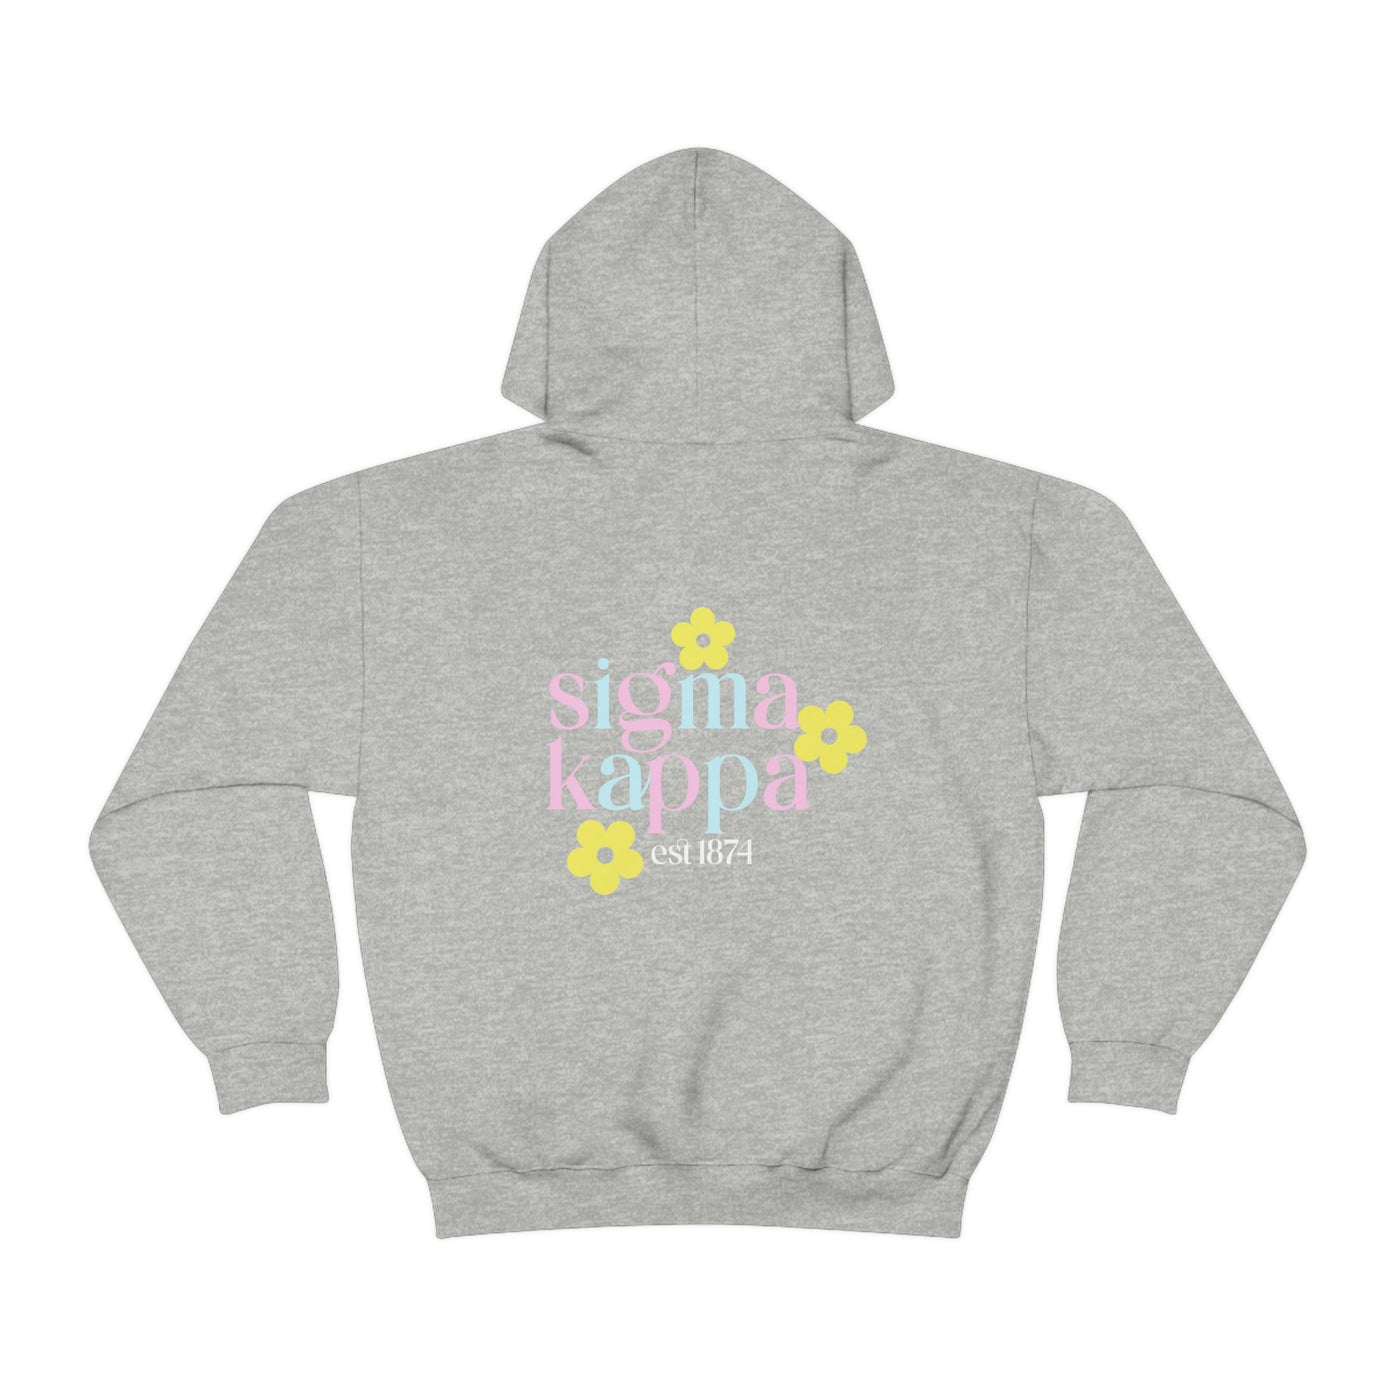 Sigma Kappa Flower Sweatshirt, Sig Kap Sorority Hoodie